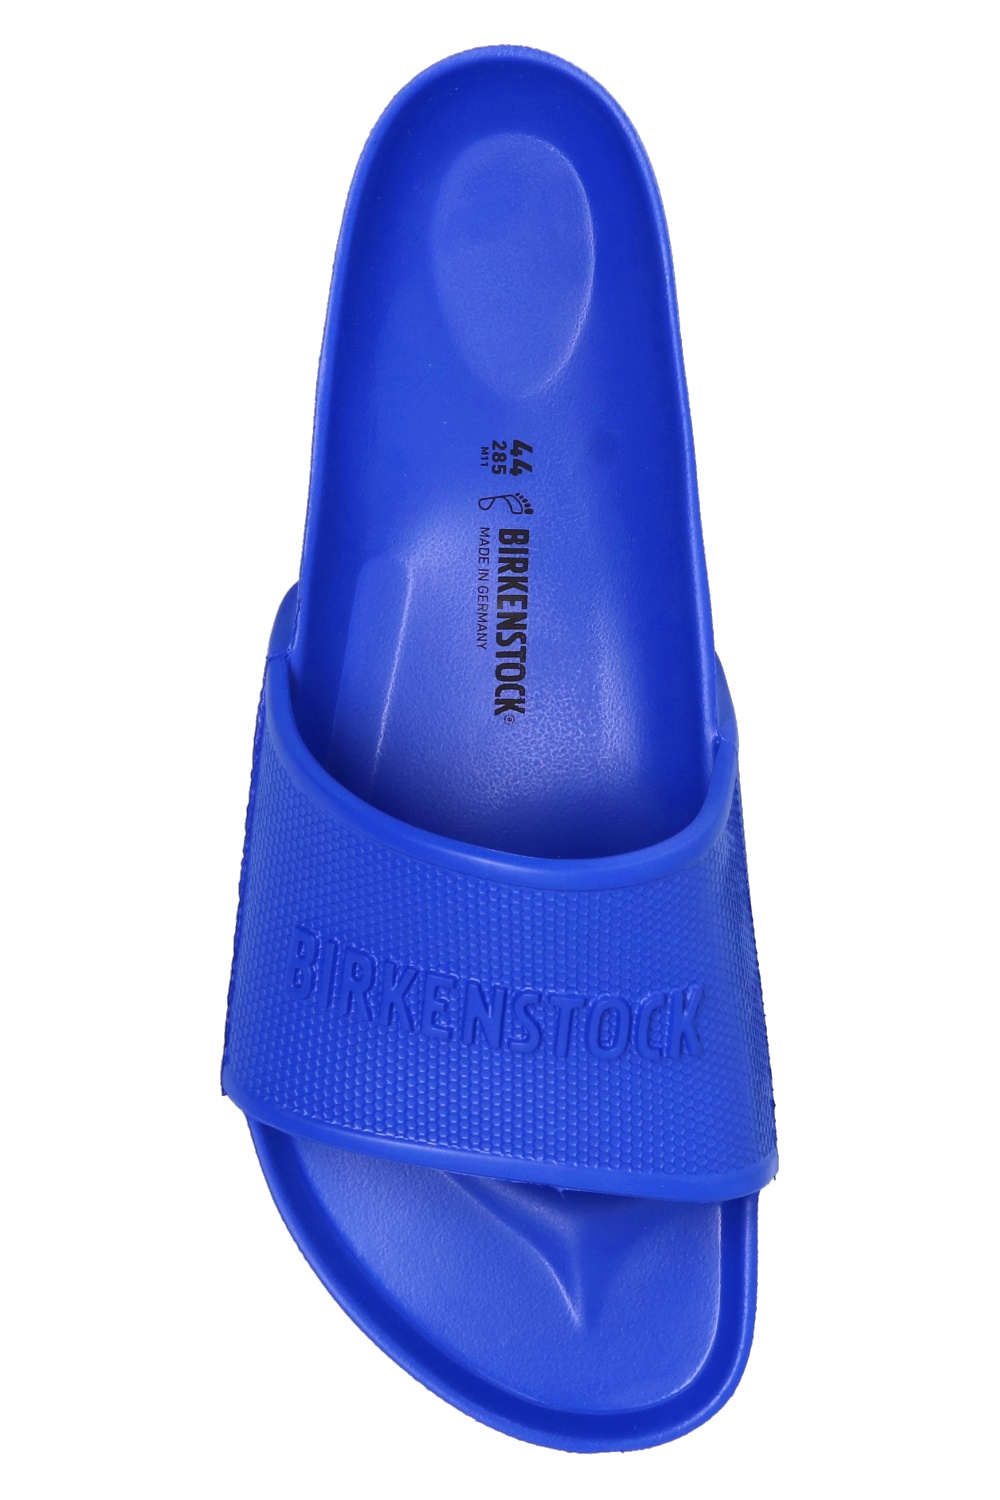 birkenstock blue plastic